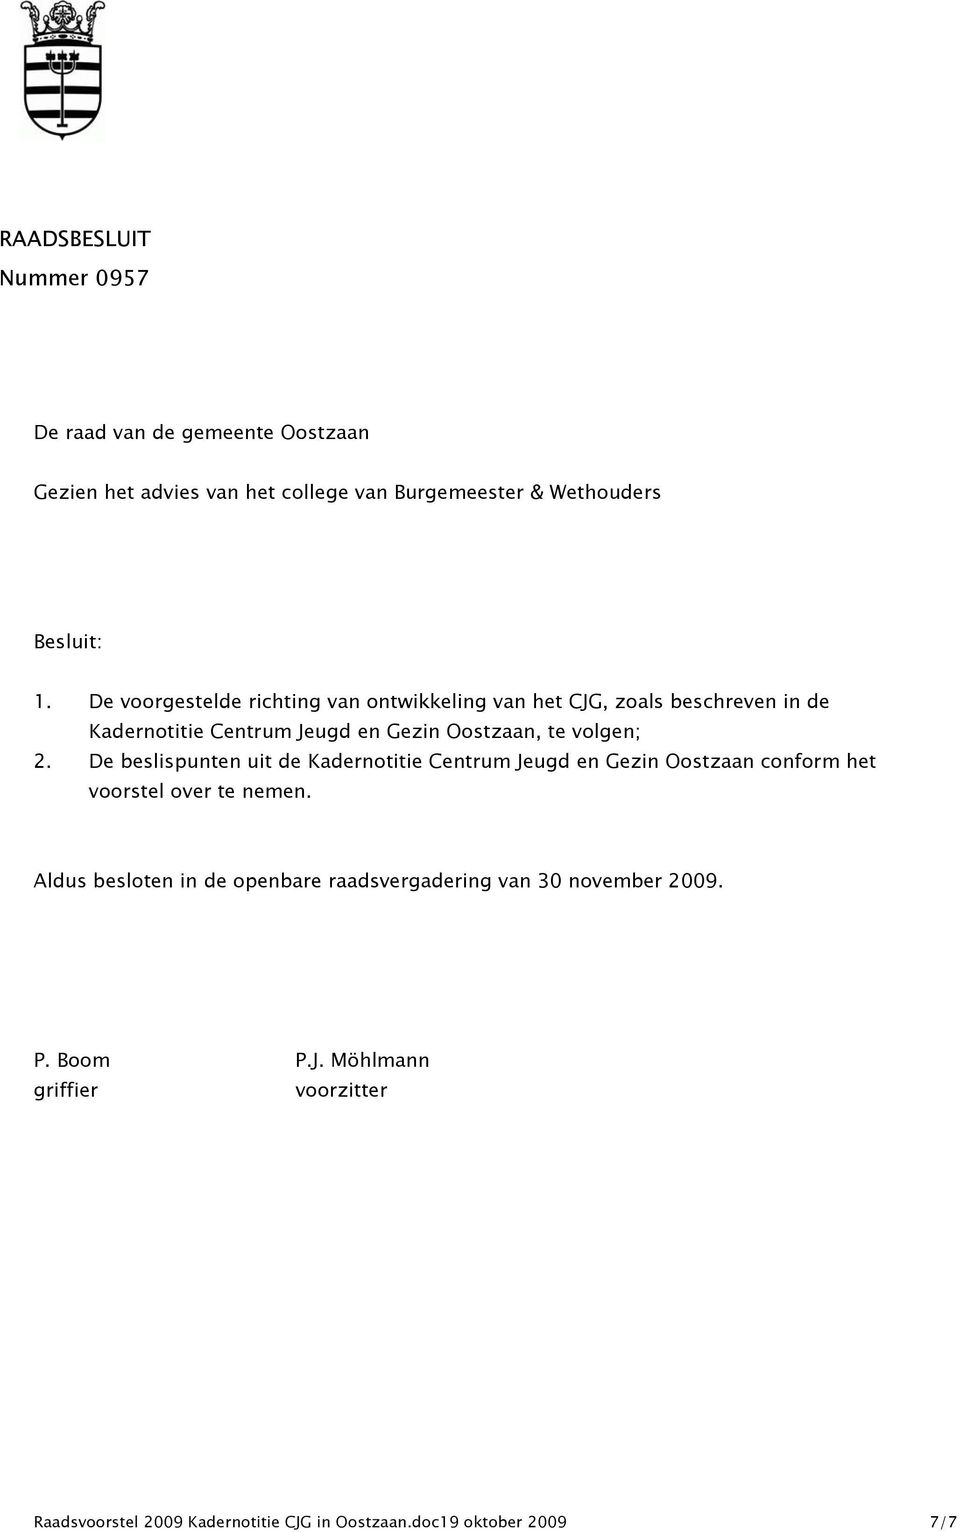 De beslispunten uit de Kadernotitie Centrum Jeugd en Gezin Oostzaan conform het voorstel over te nemen.